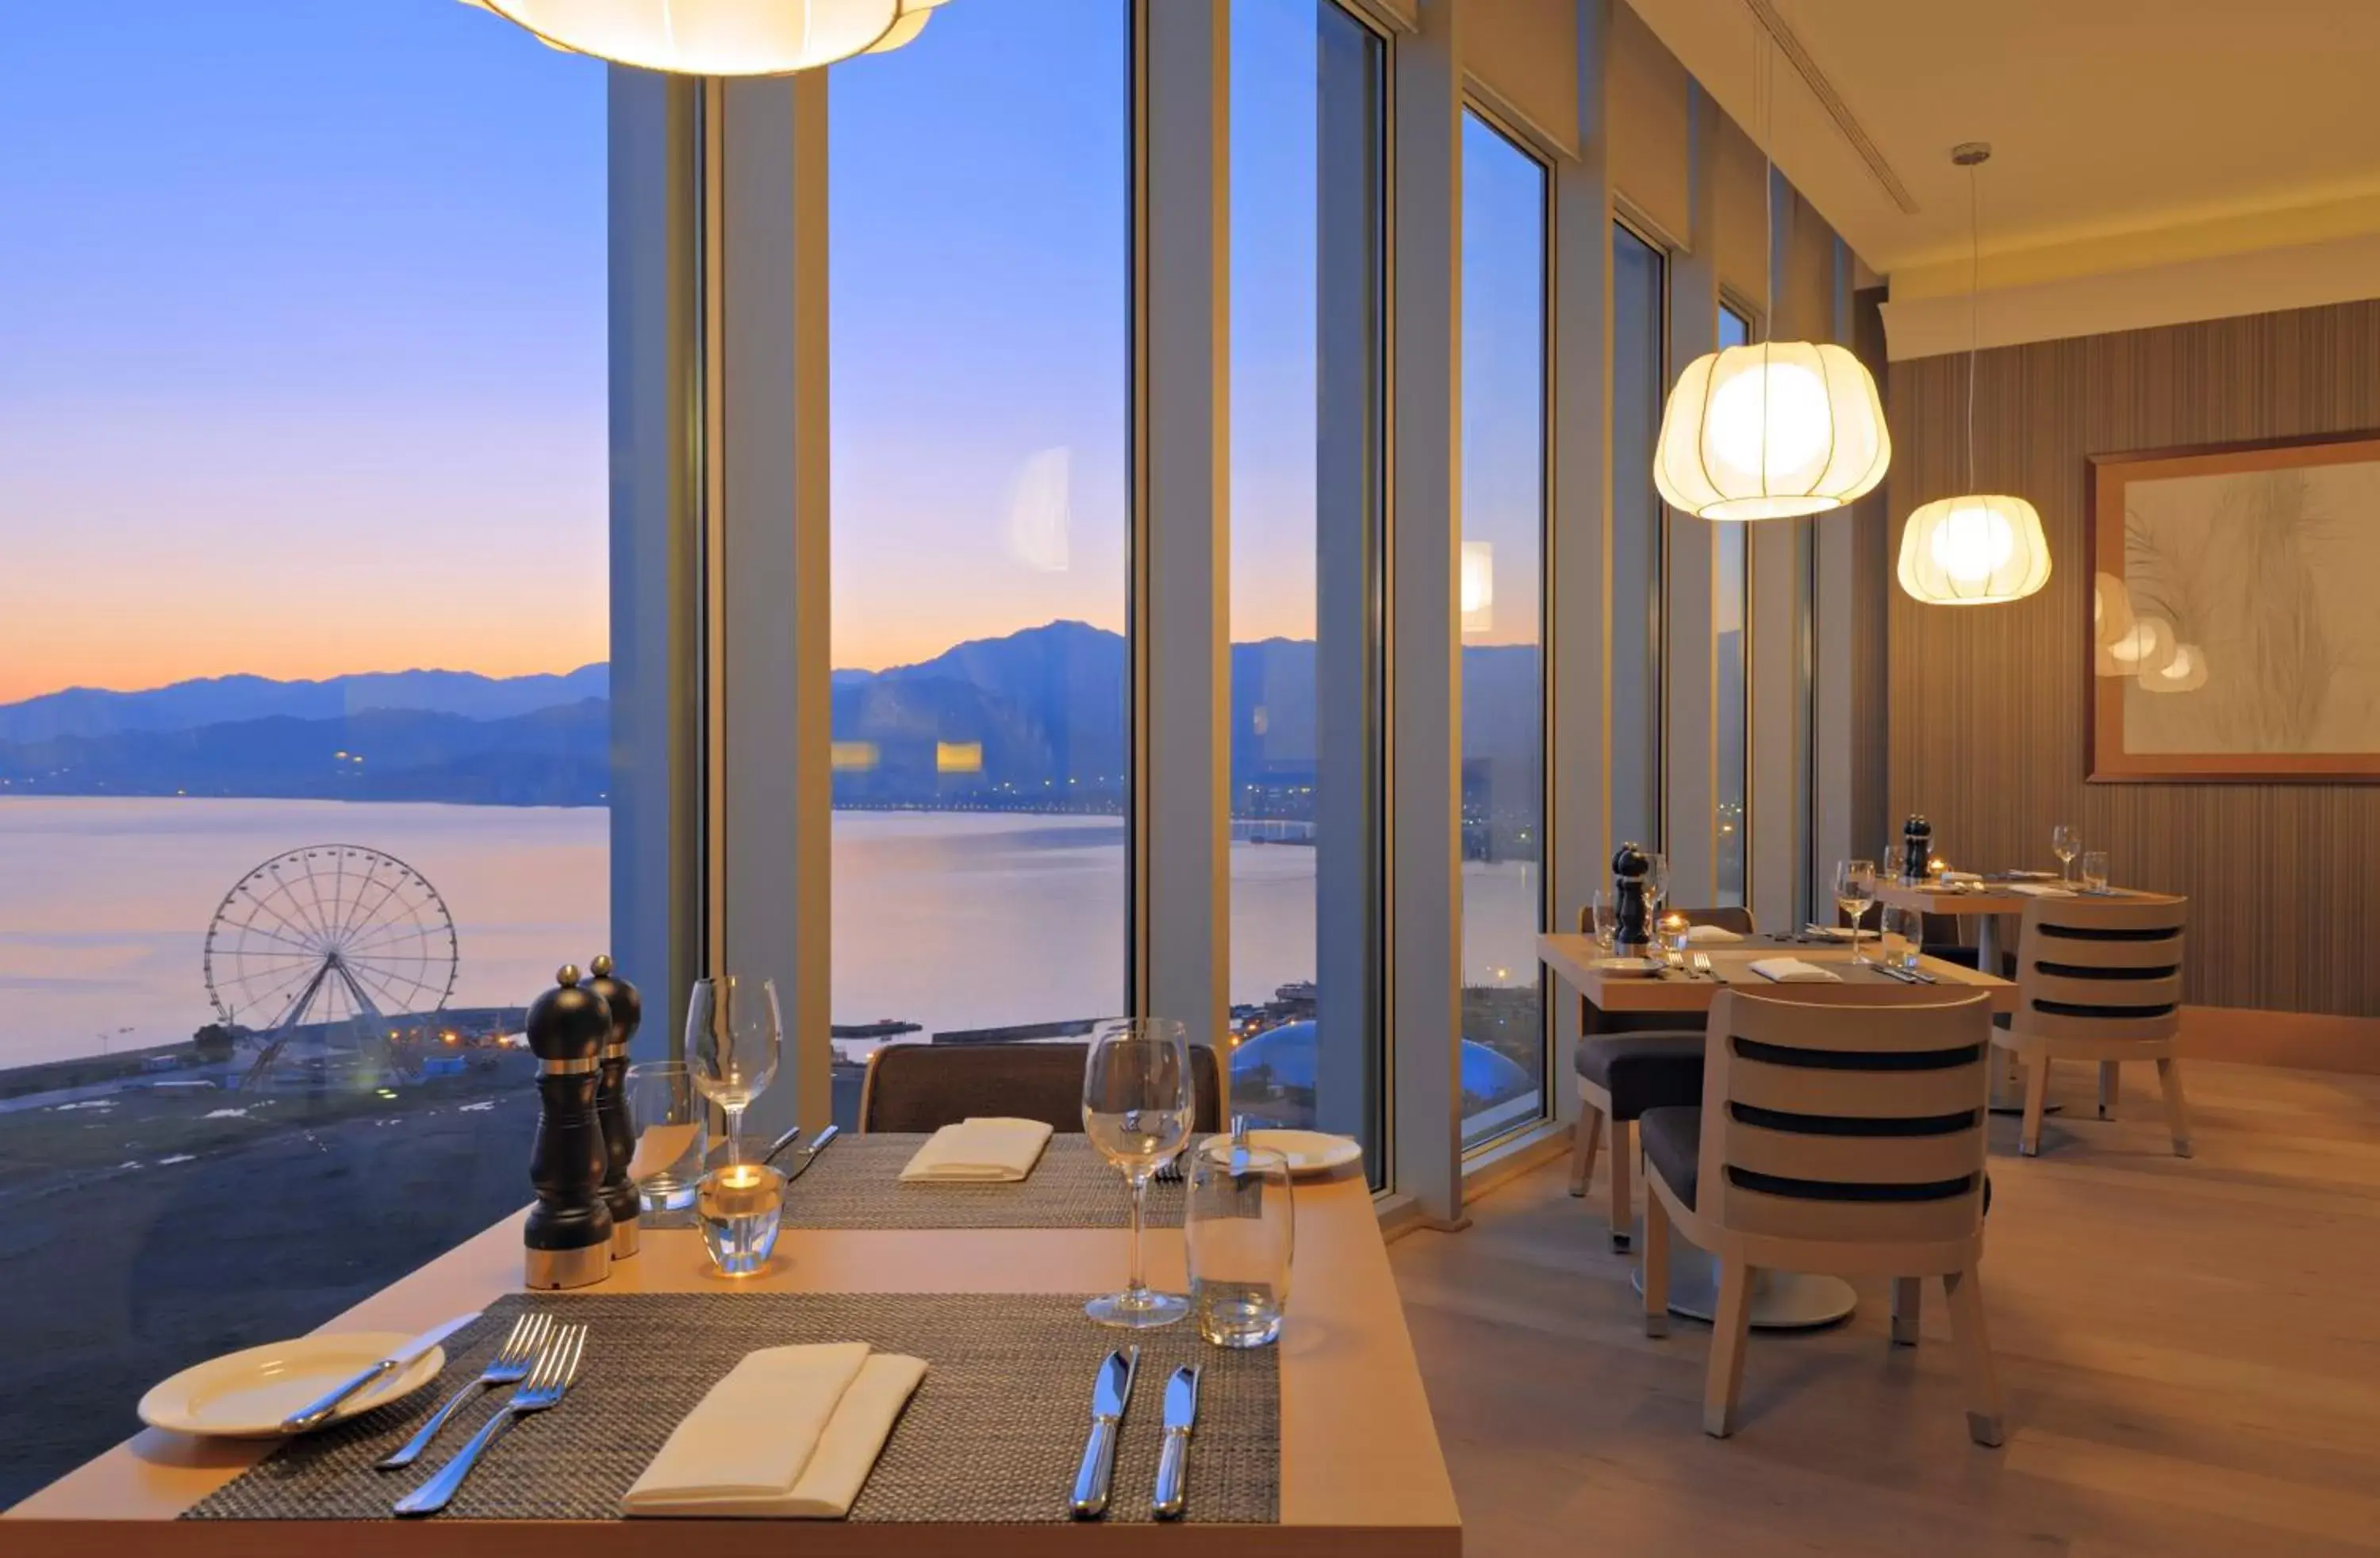 Restaurant/places to eat in Radisson Blu Hotel Batumi